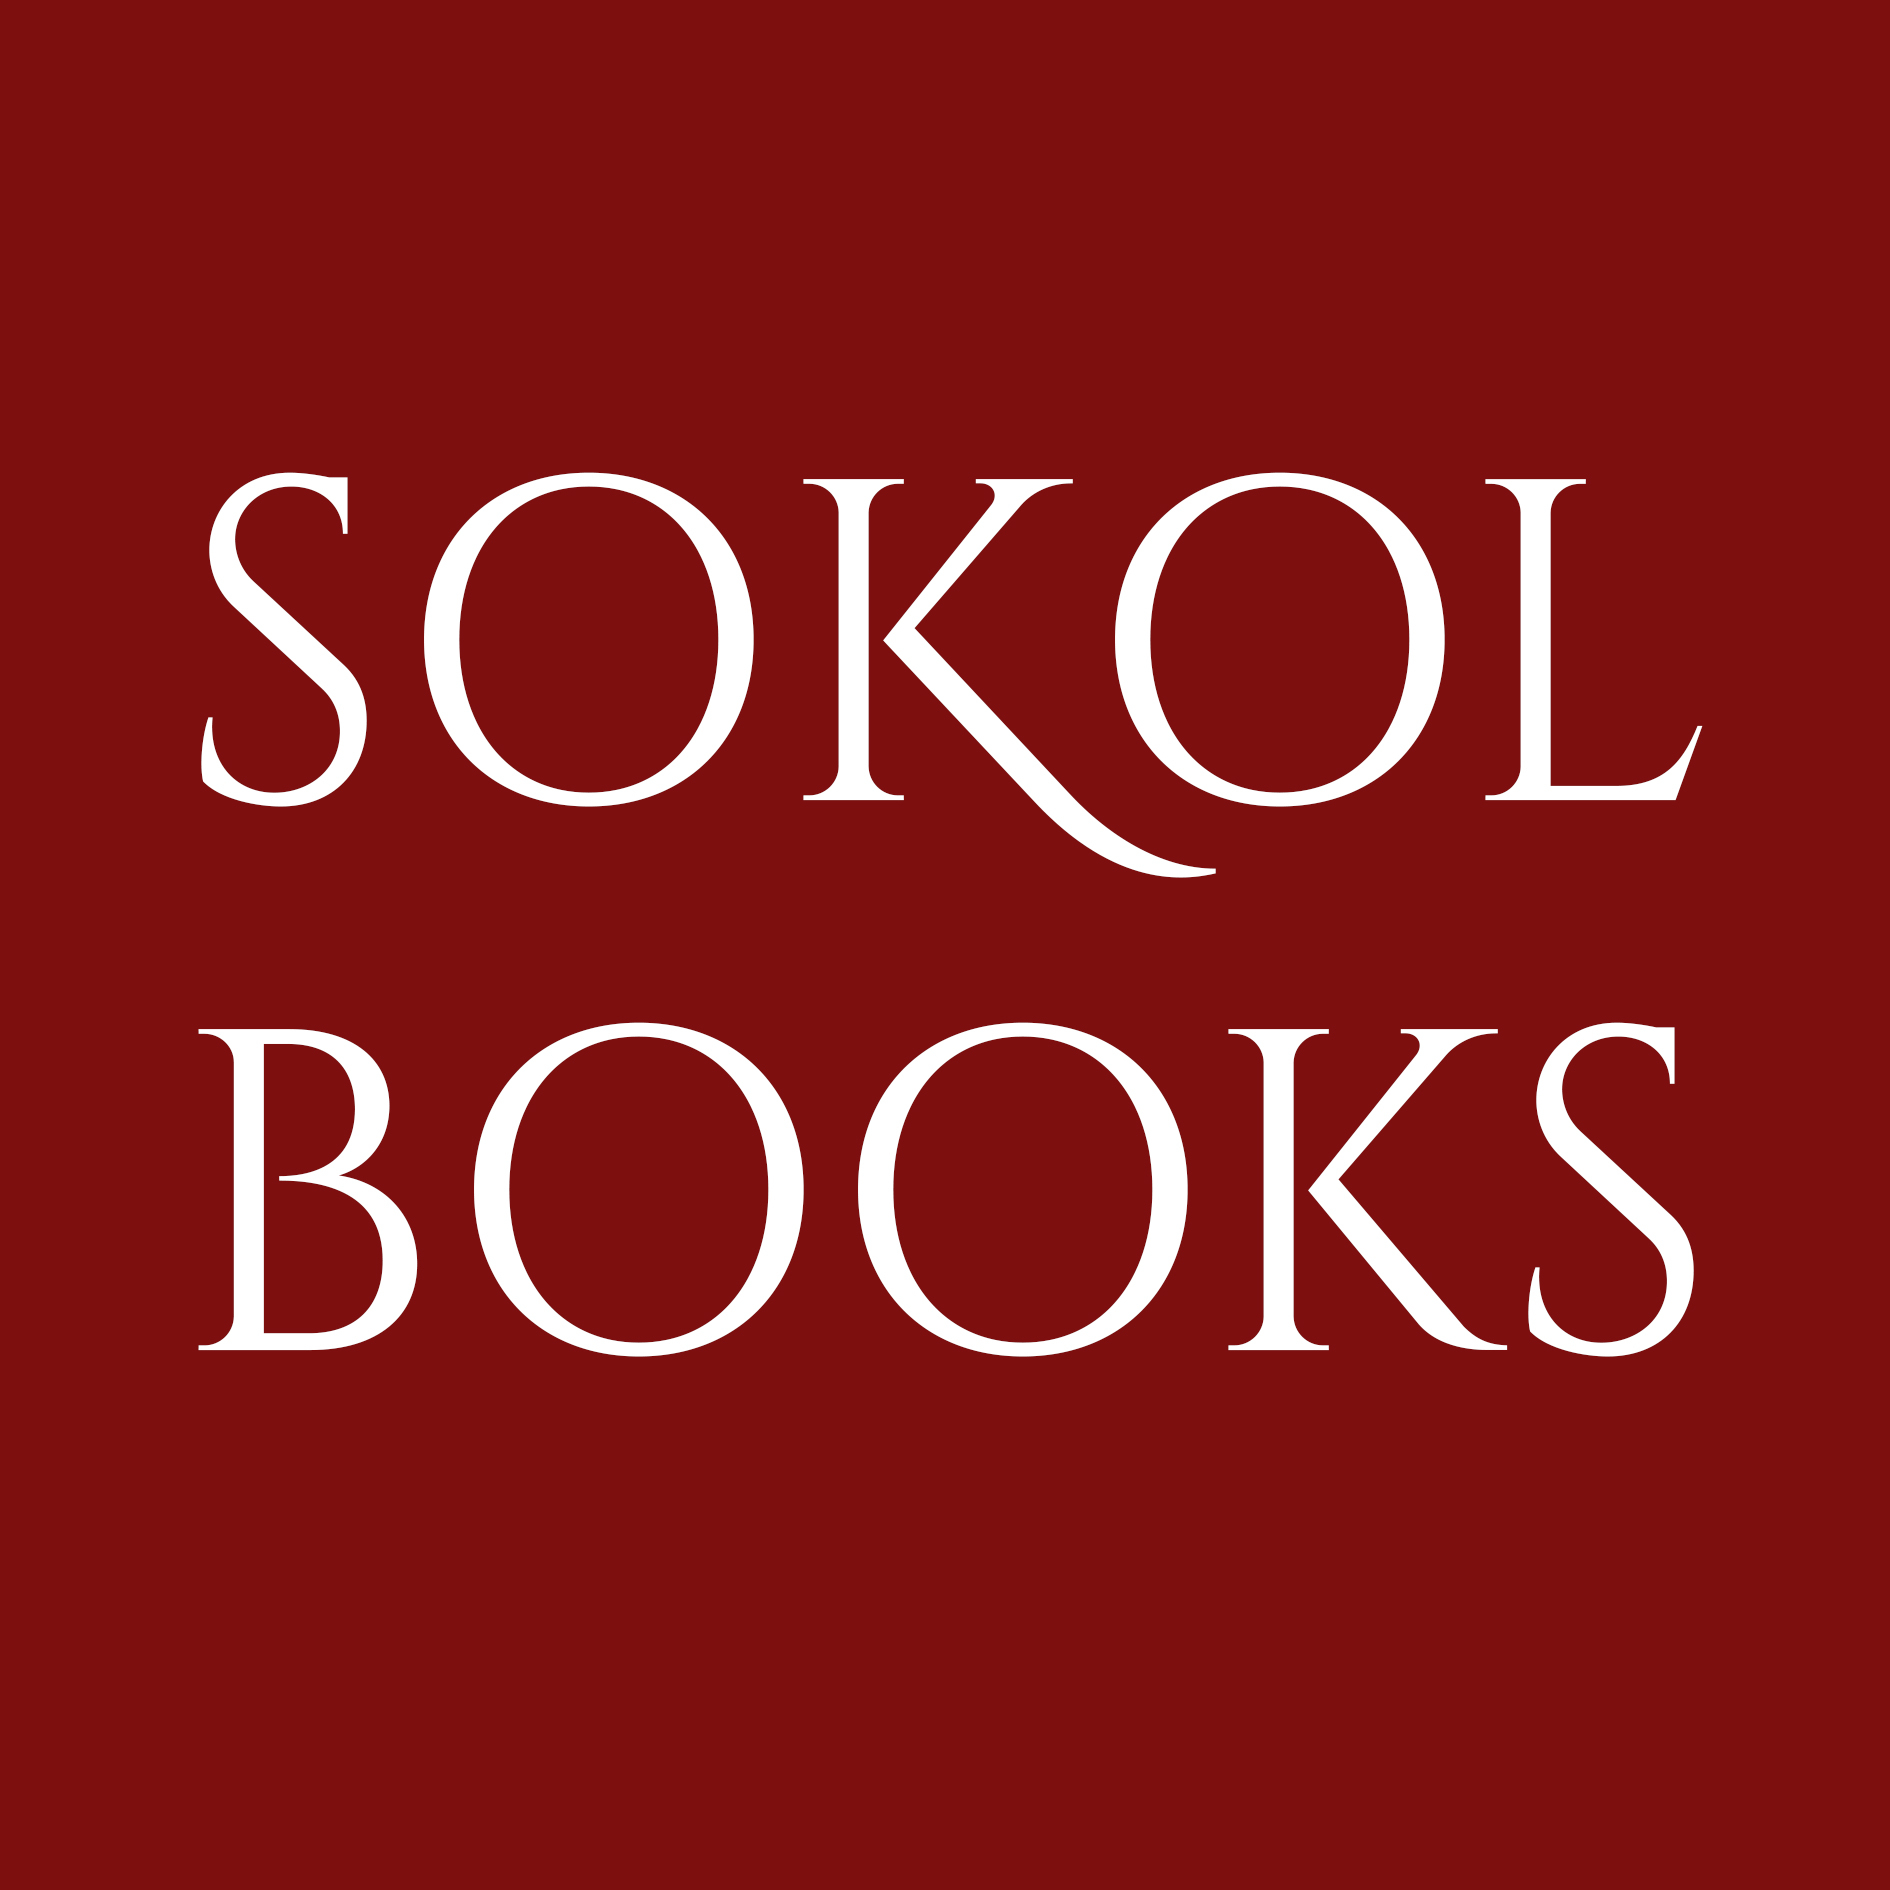 Sokol Books Ltd